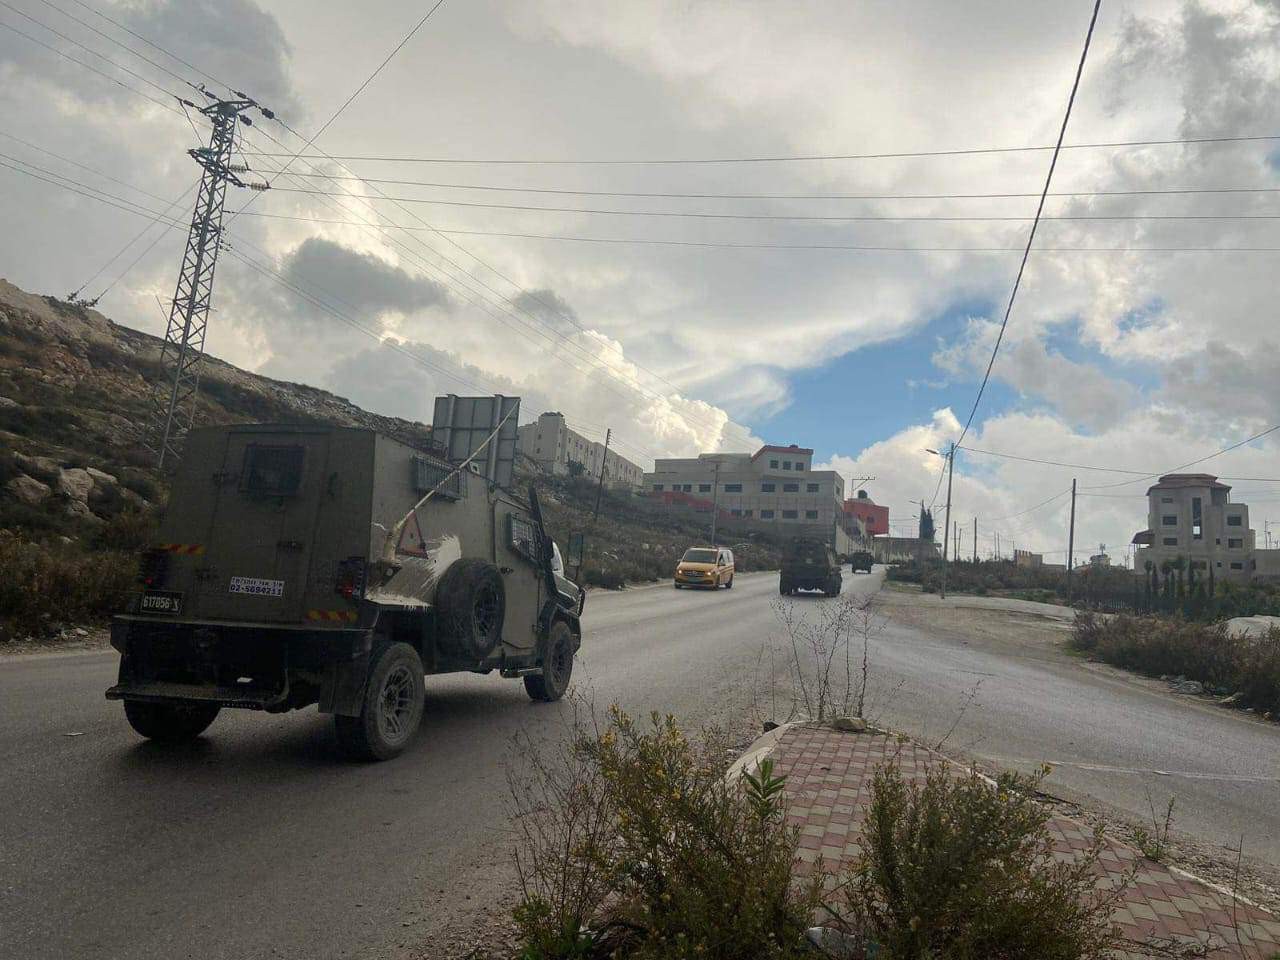 اقتحام نابلس قوات جيش الاحتلال الاسرائيلي تقتحم الضفة.jfif